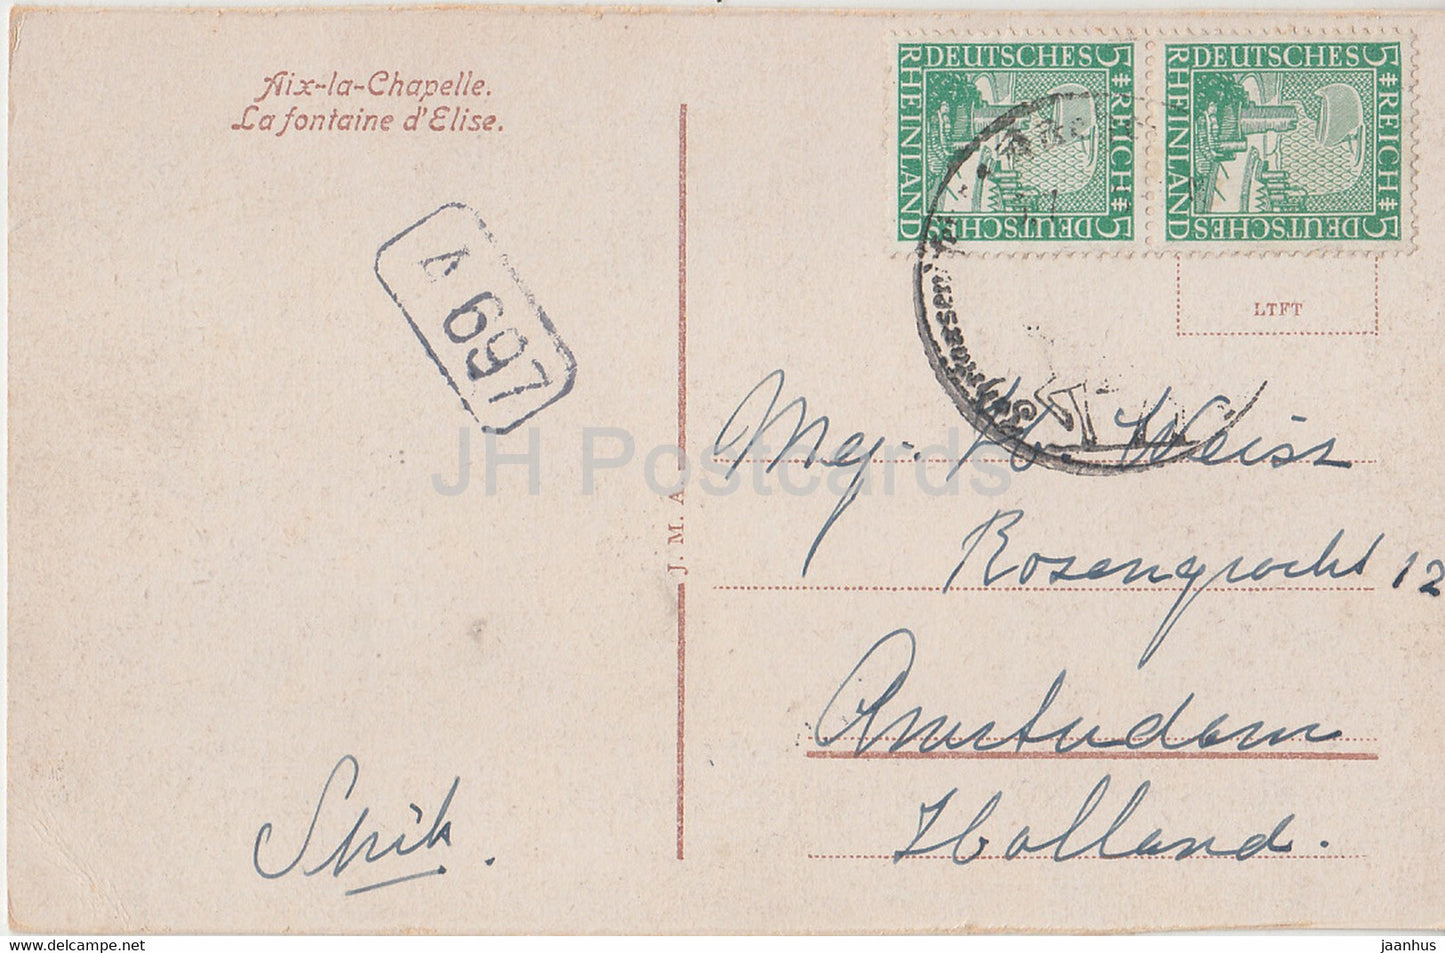 Aix-la-Chapelle - Elisenbrunnen - Aix la Chapelle - La Fontaine d'Elise - carte postale ancienne - Allemagne - occasion